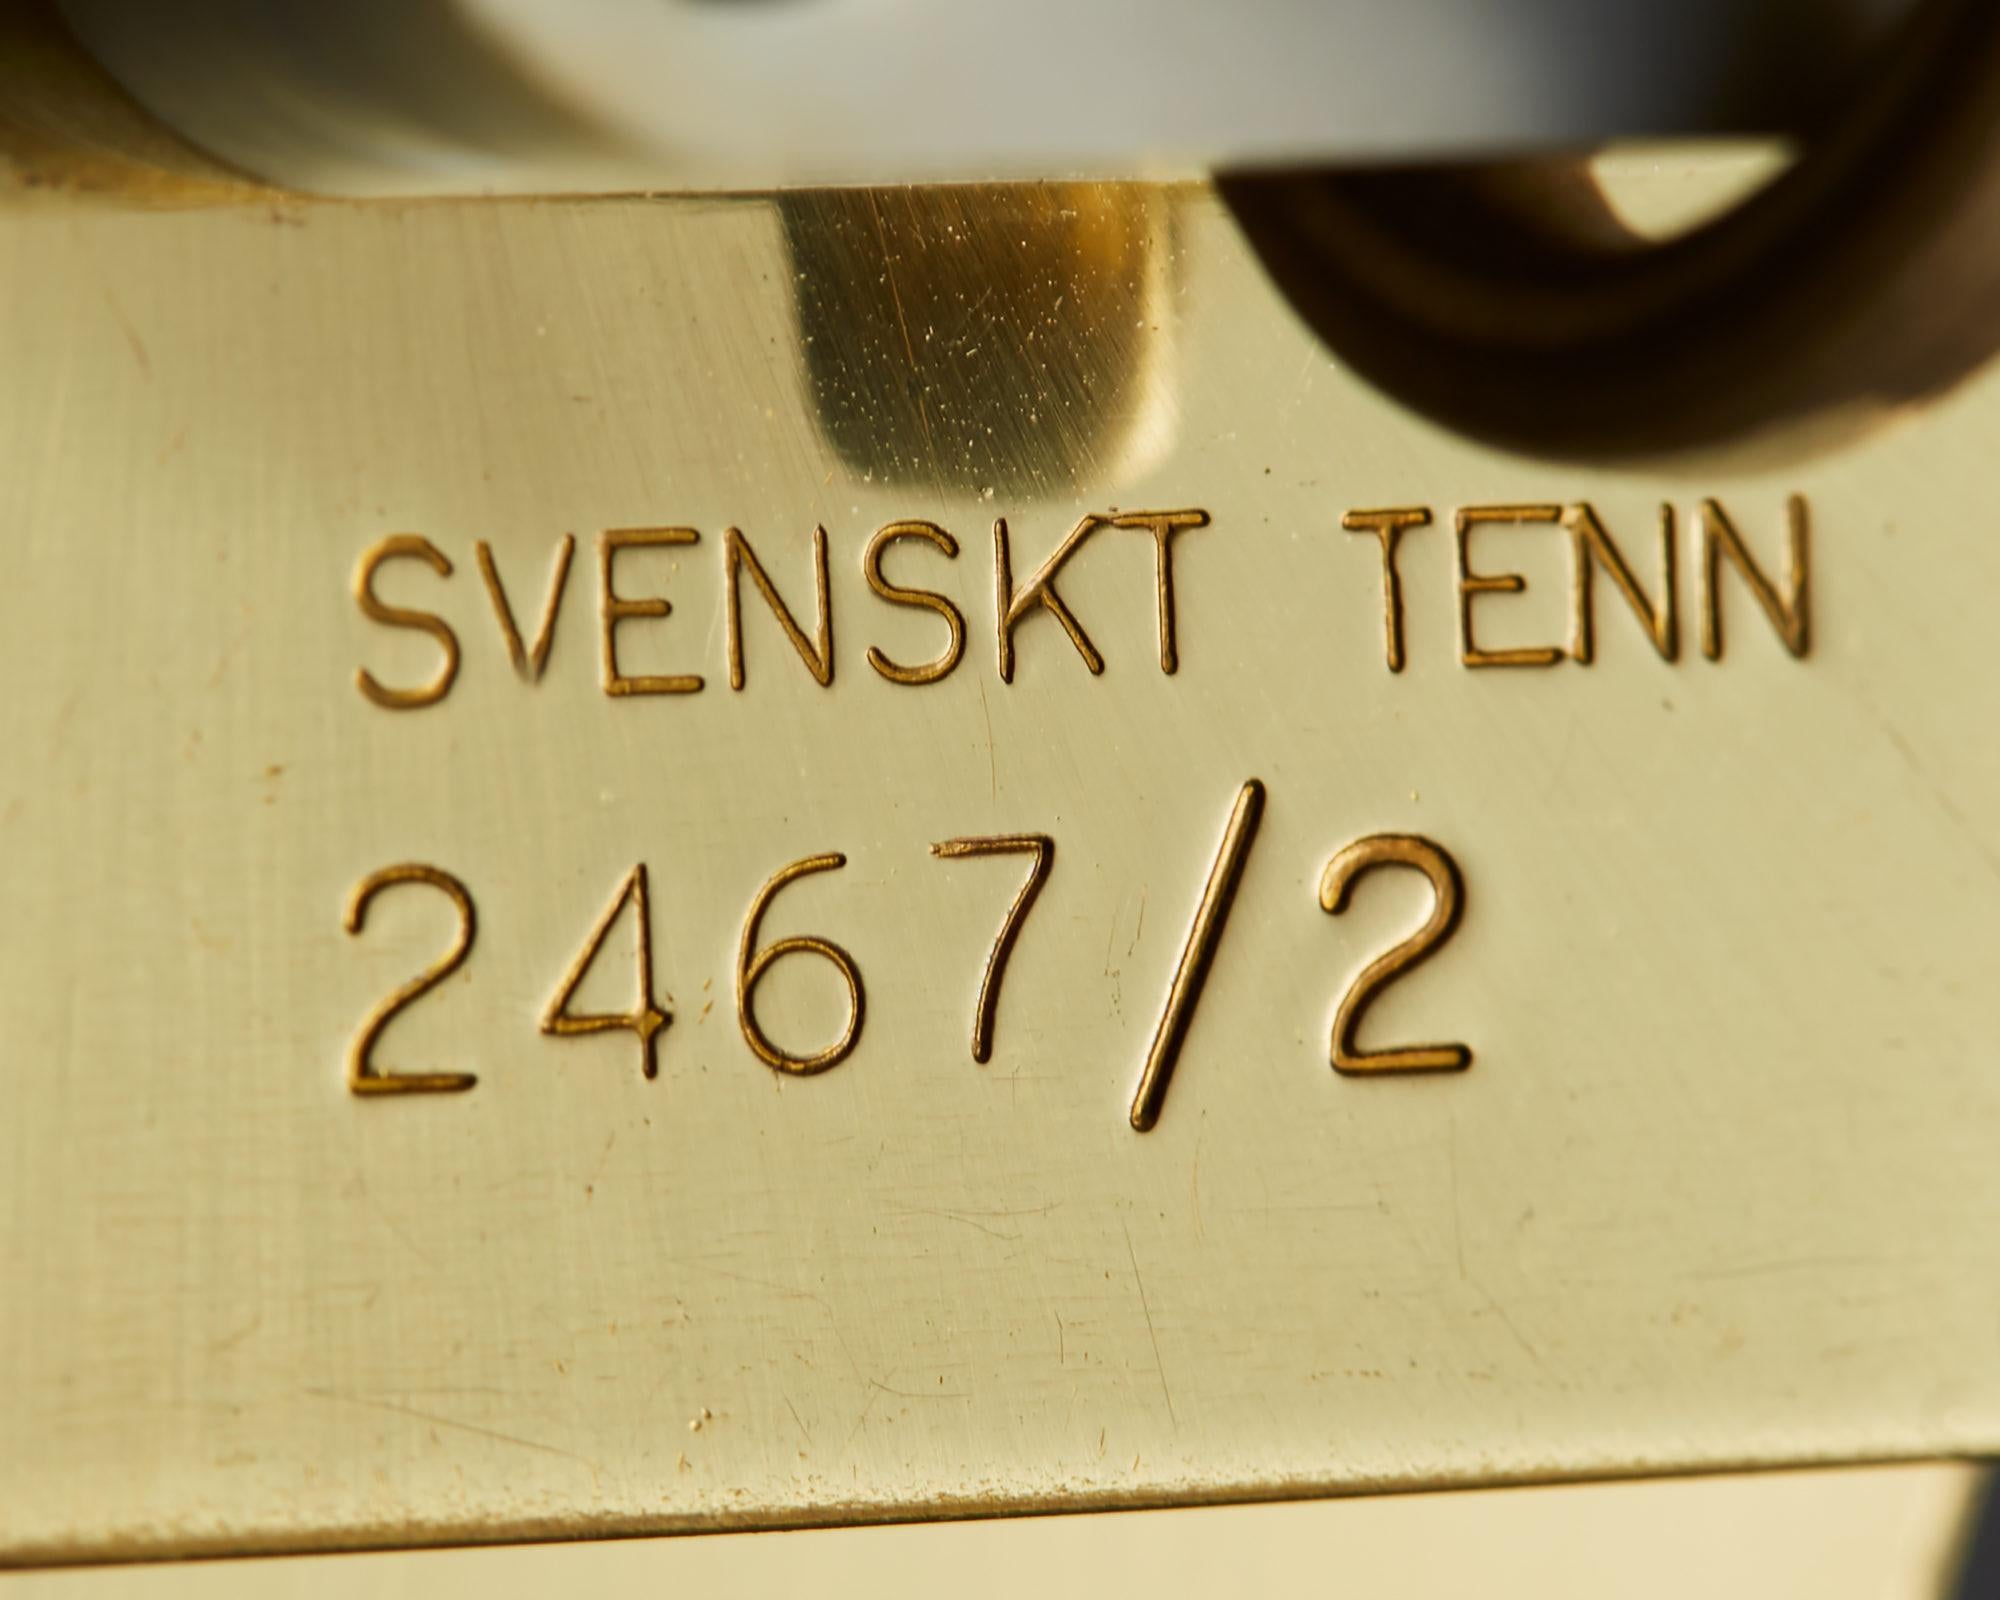 Brass Table Lamp Model 2467/2 Designed by Josef Frank for Svenskt Tenn, Sweden, 1938